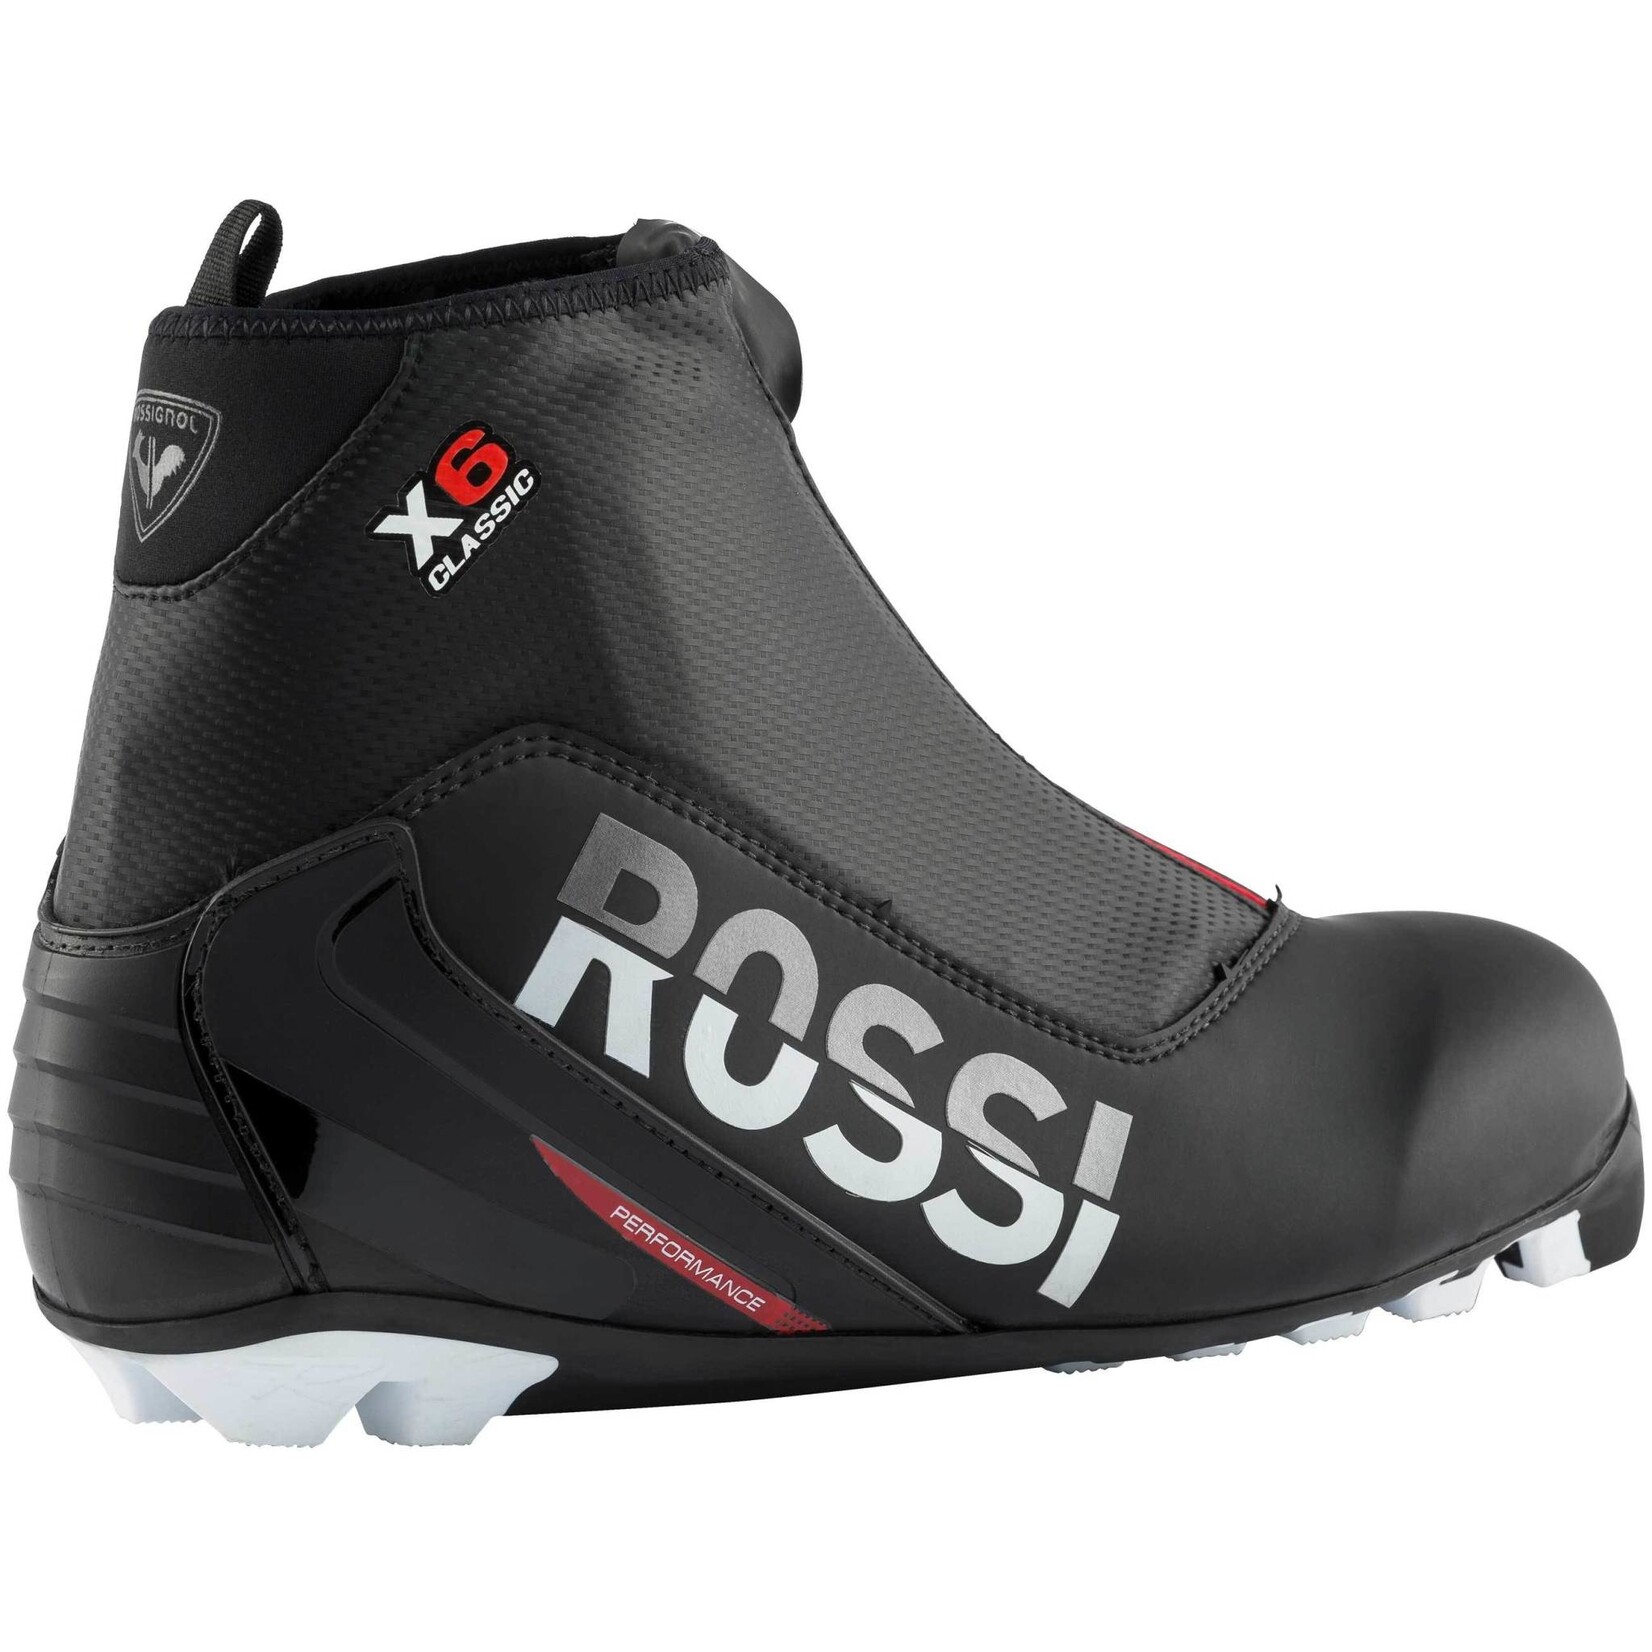 Rossignol X-6 (Bottes de ski de fond classiques)